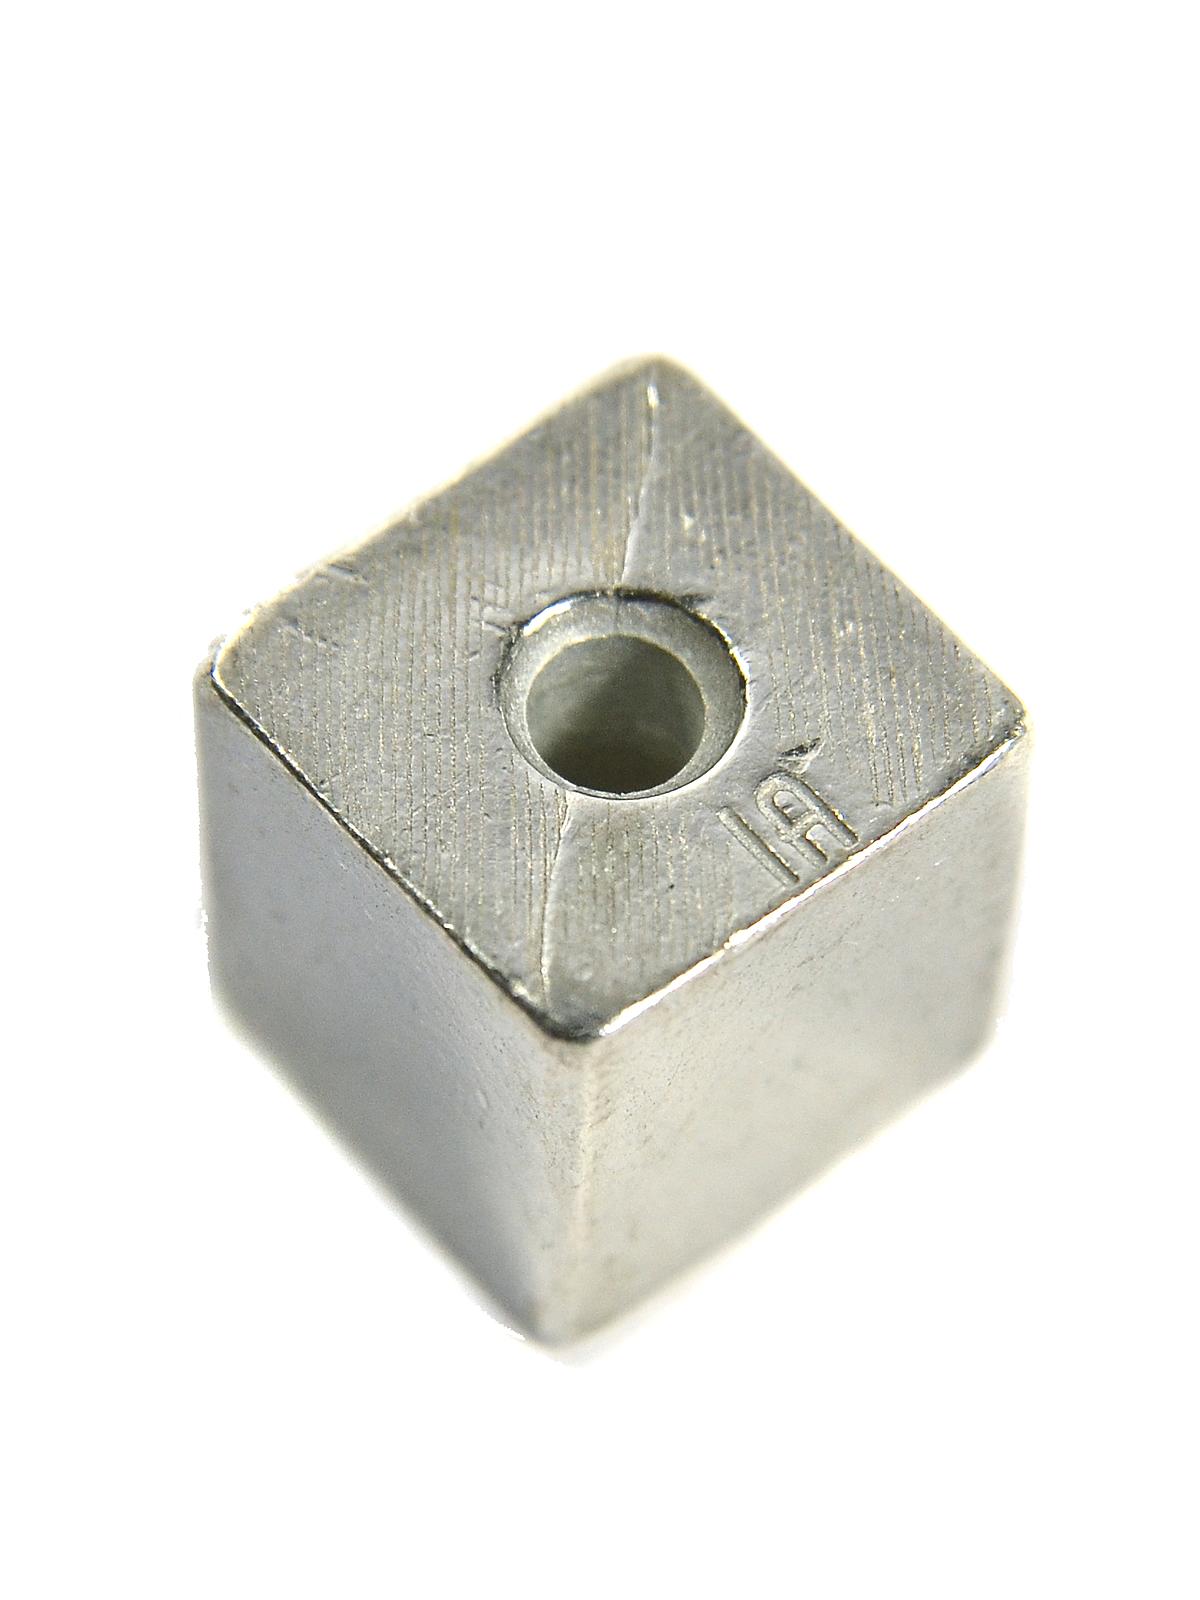 Pewter Metal Blanks Cube 1 2 In. Each